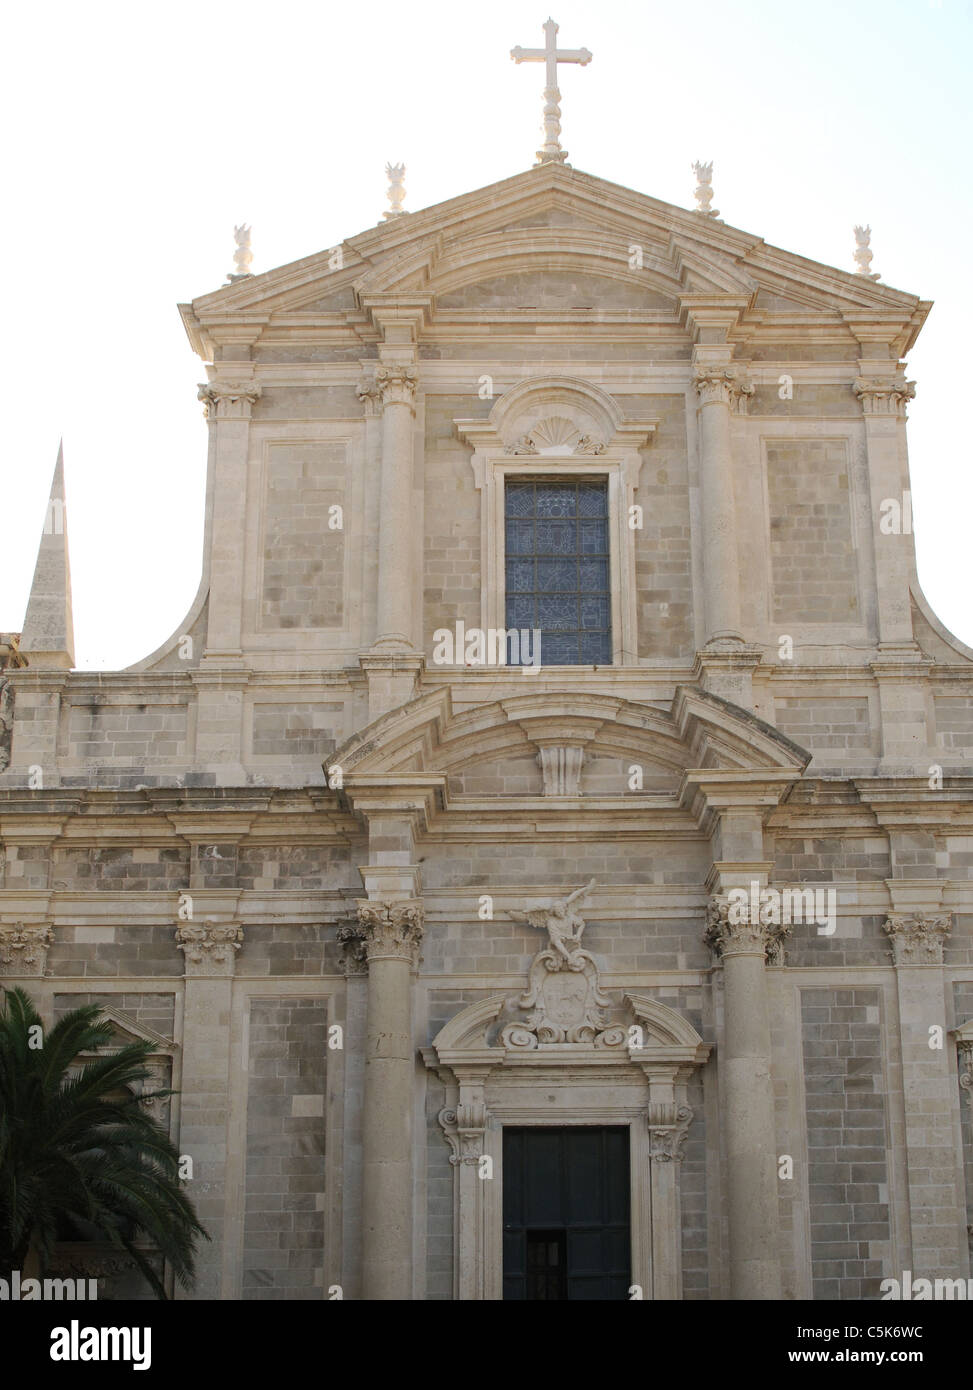 Croatia. Dubrovnik. Saint Ignatius of Loyola church. 17th-18th centuries. Exterior. Stock Photo